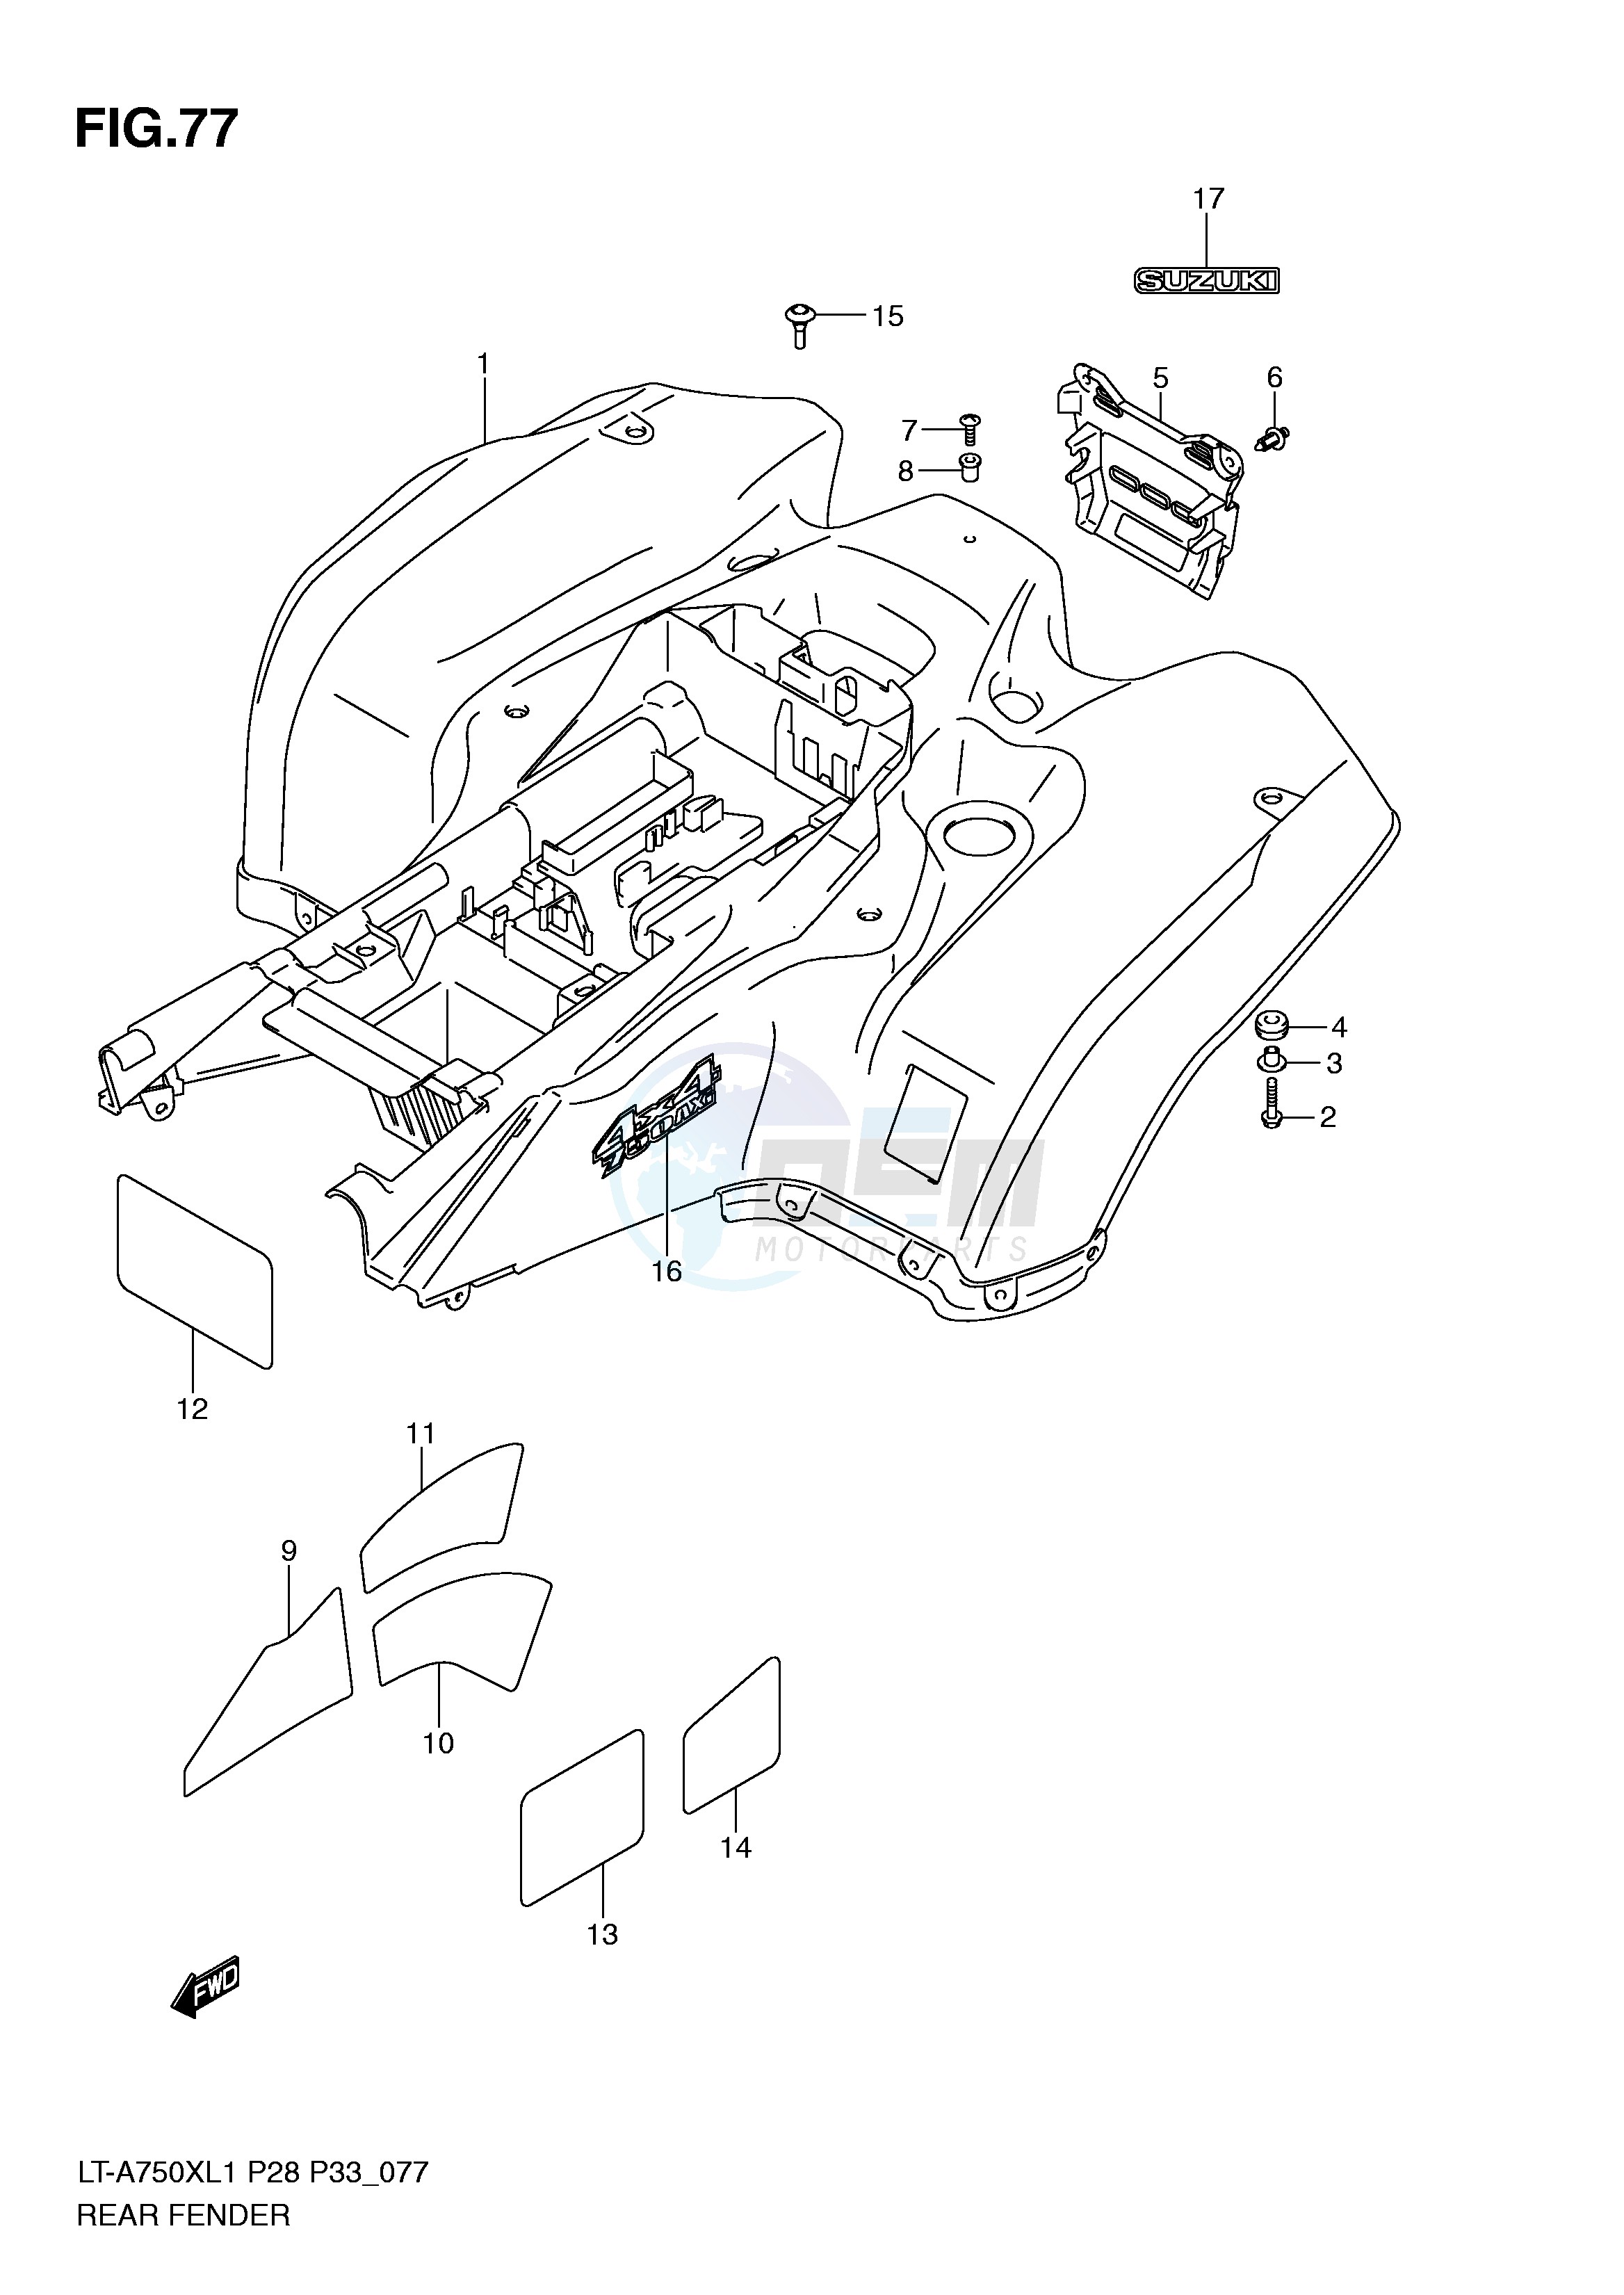 REAR FENDER (LT-A750XZL1 P33) blueprint